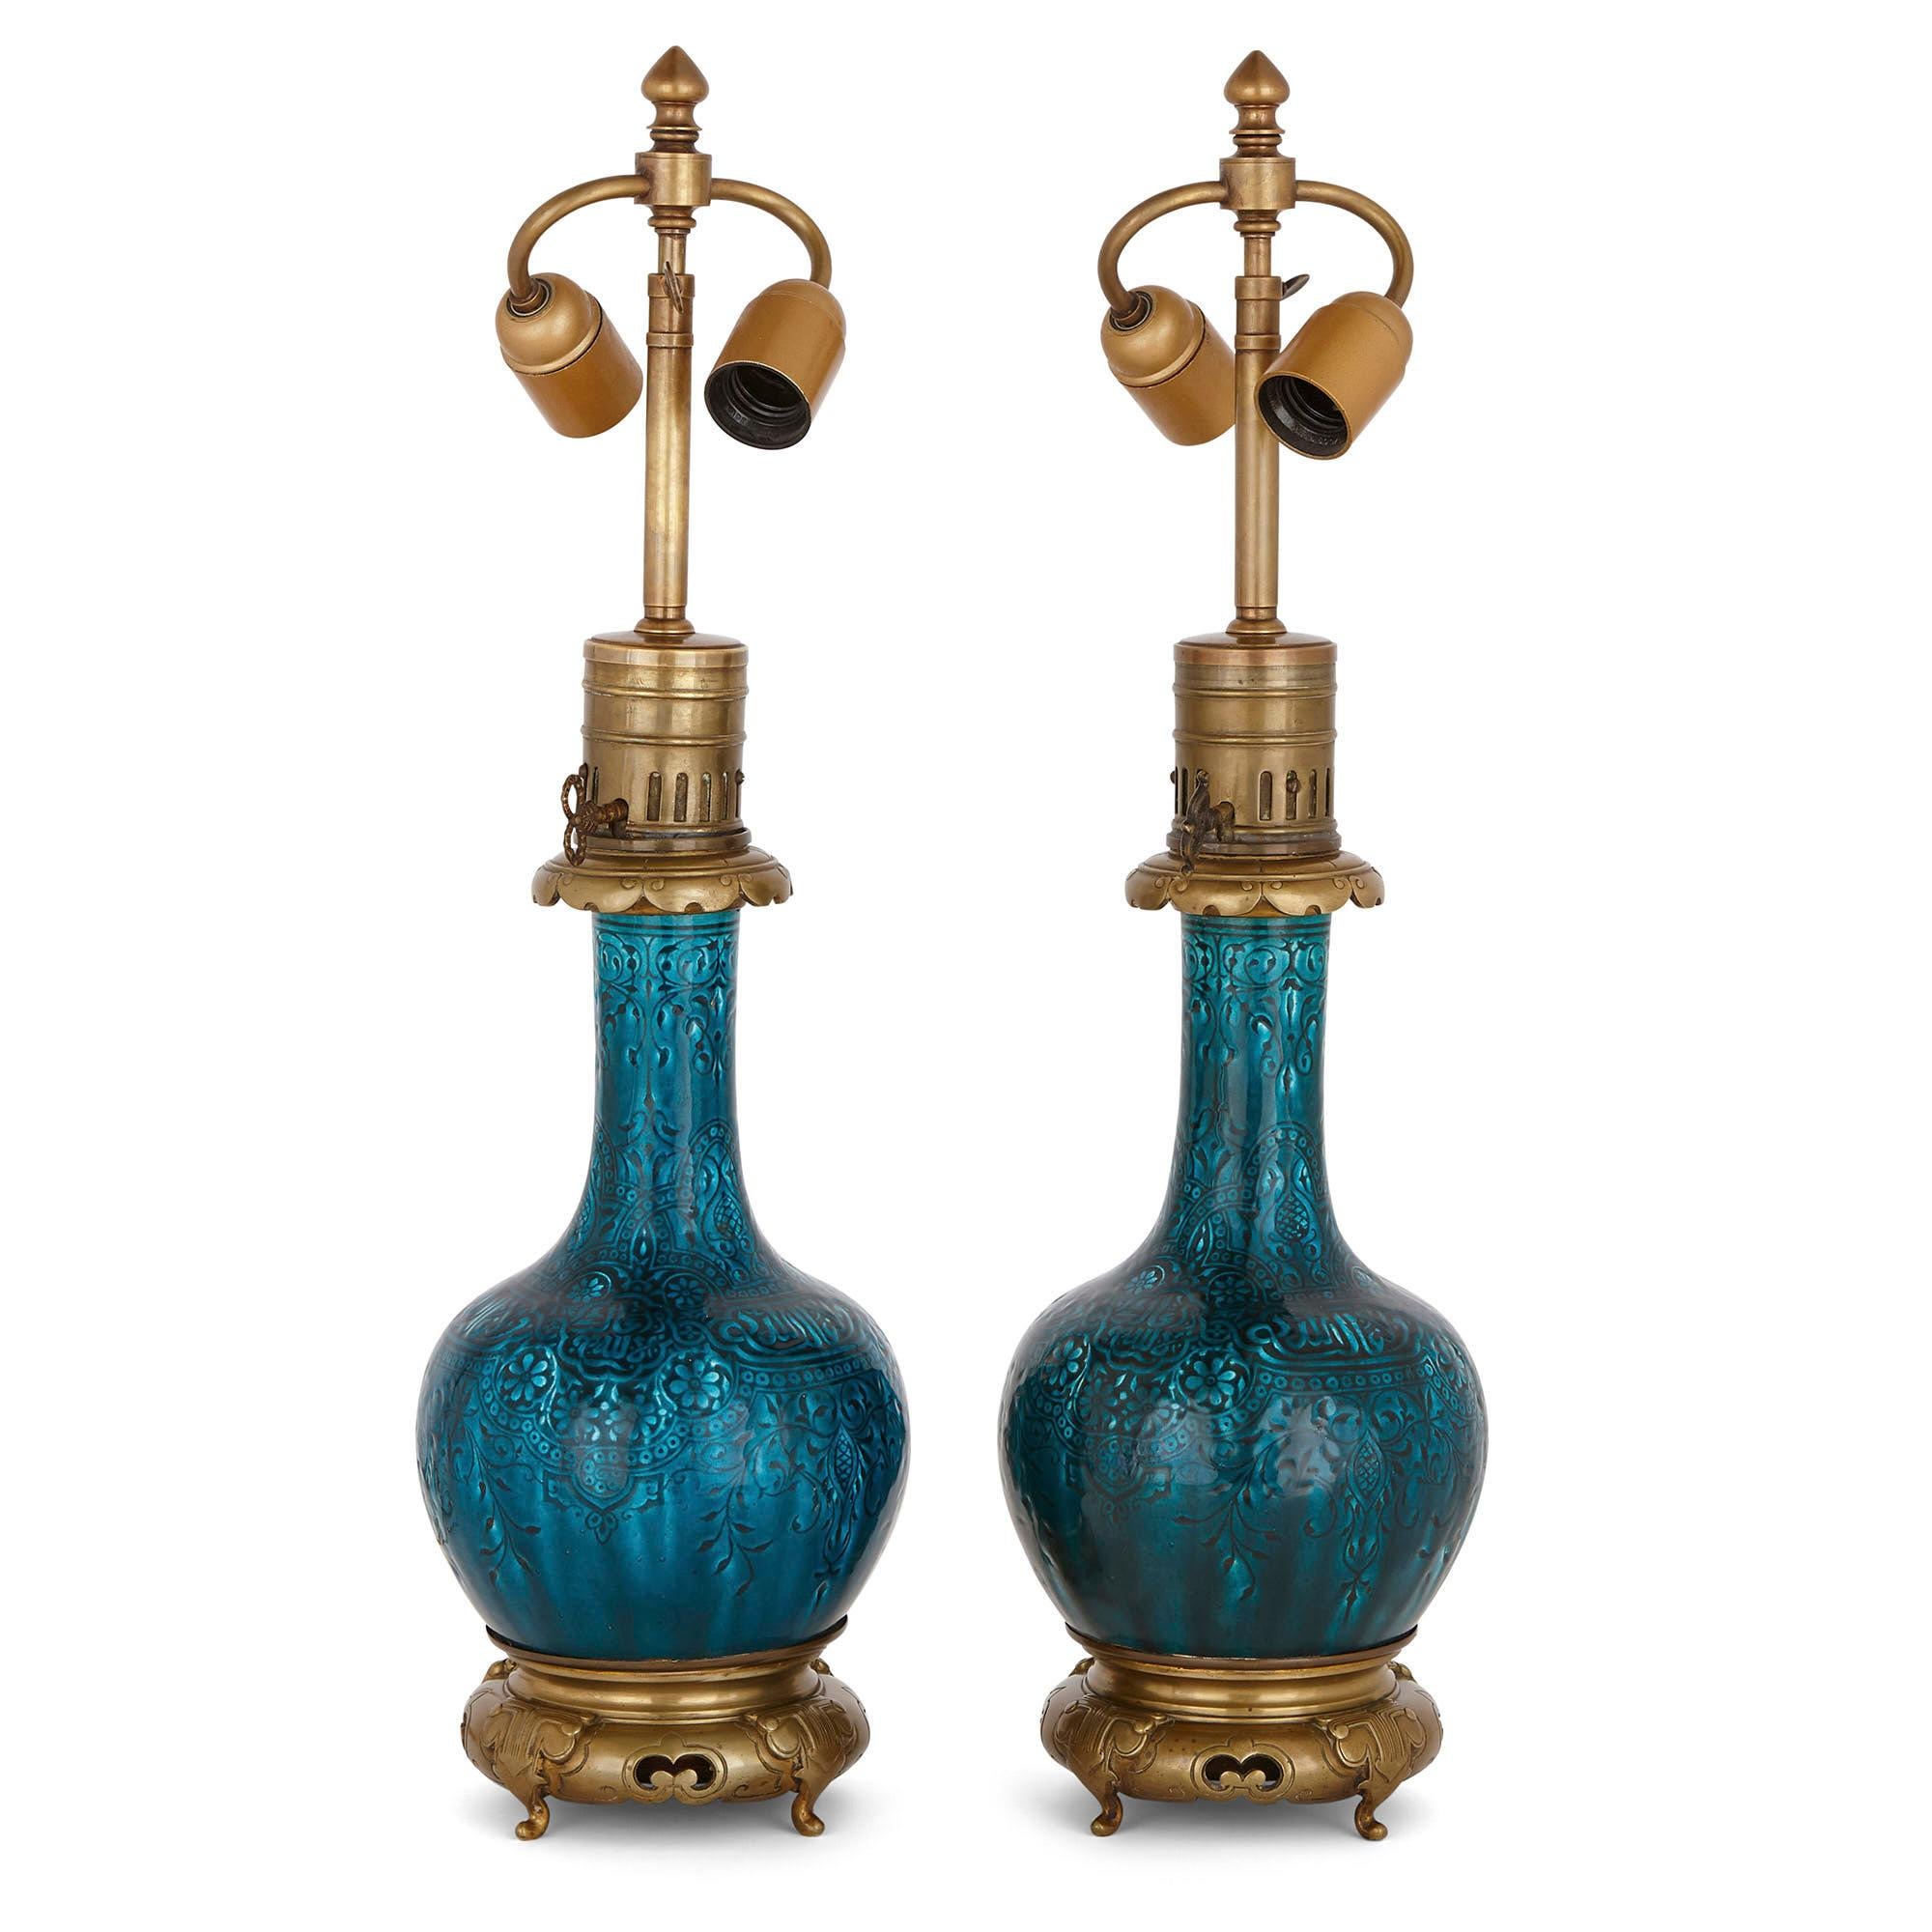 Diese schönen Tischlampen werden Joseph-Théodore Deck, einem der bedeutendsten Keramiker des 19. Jahrhunderts, zugeschrieben. Deck war der Leiter einer angesehenen Fayence-Werkstatt in Frankreich. Er war bekannt für seine hochwertigen Keramikwaren,